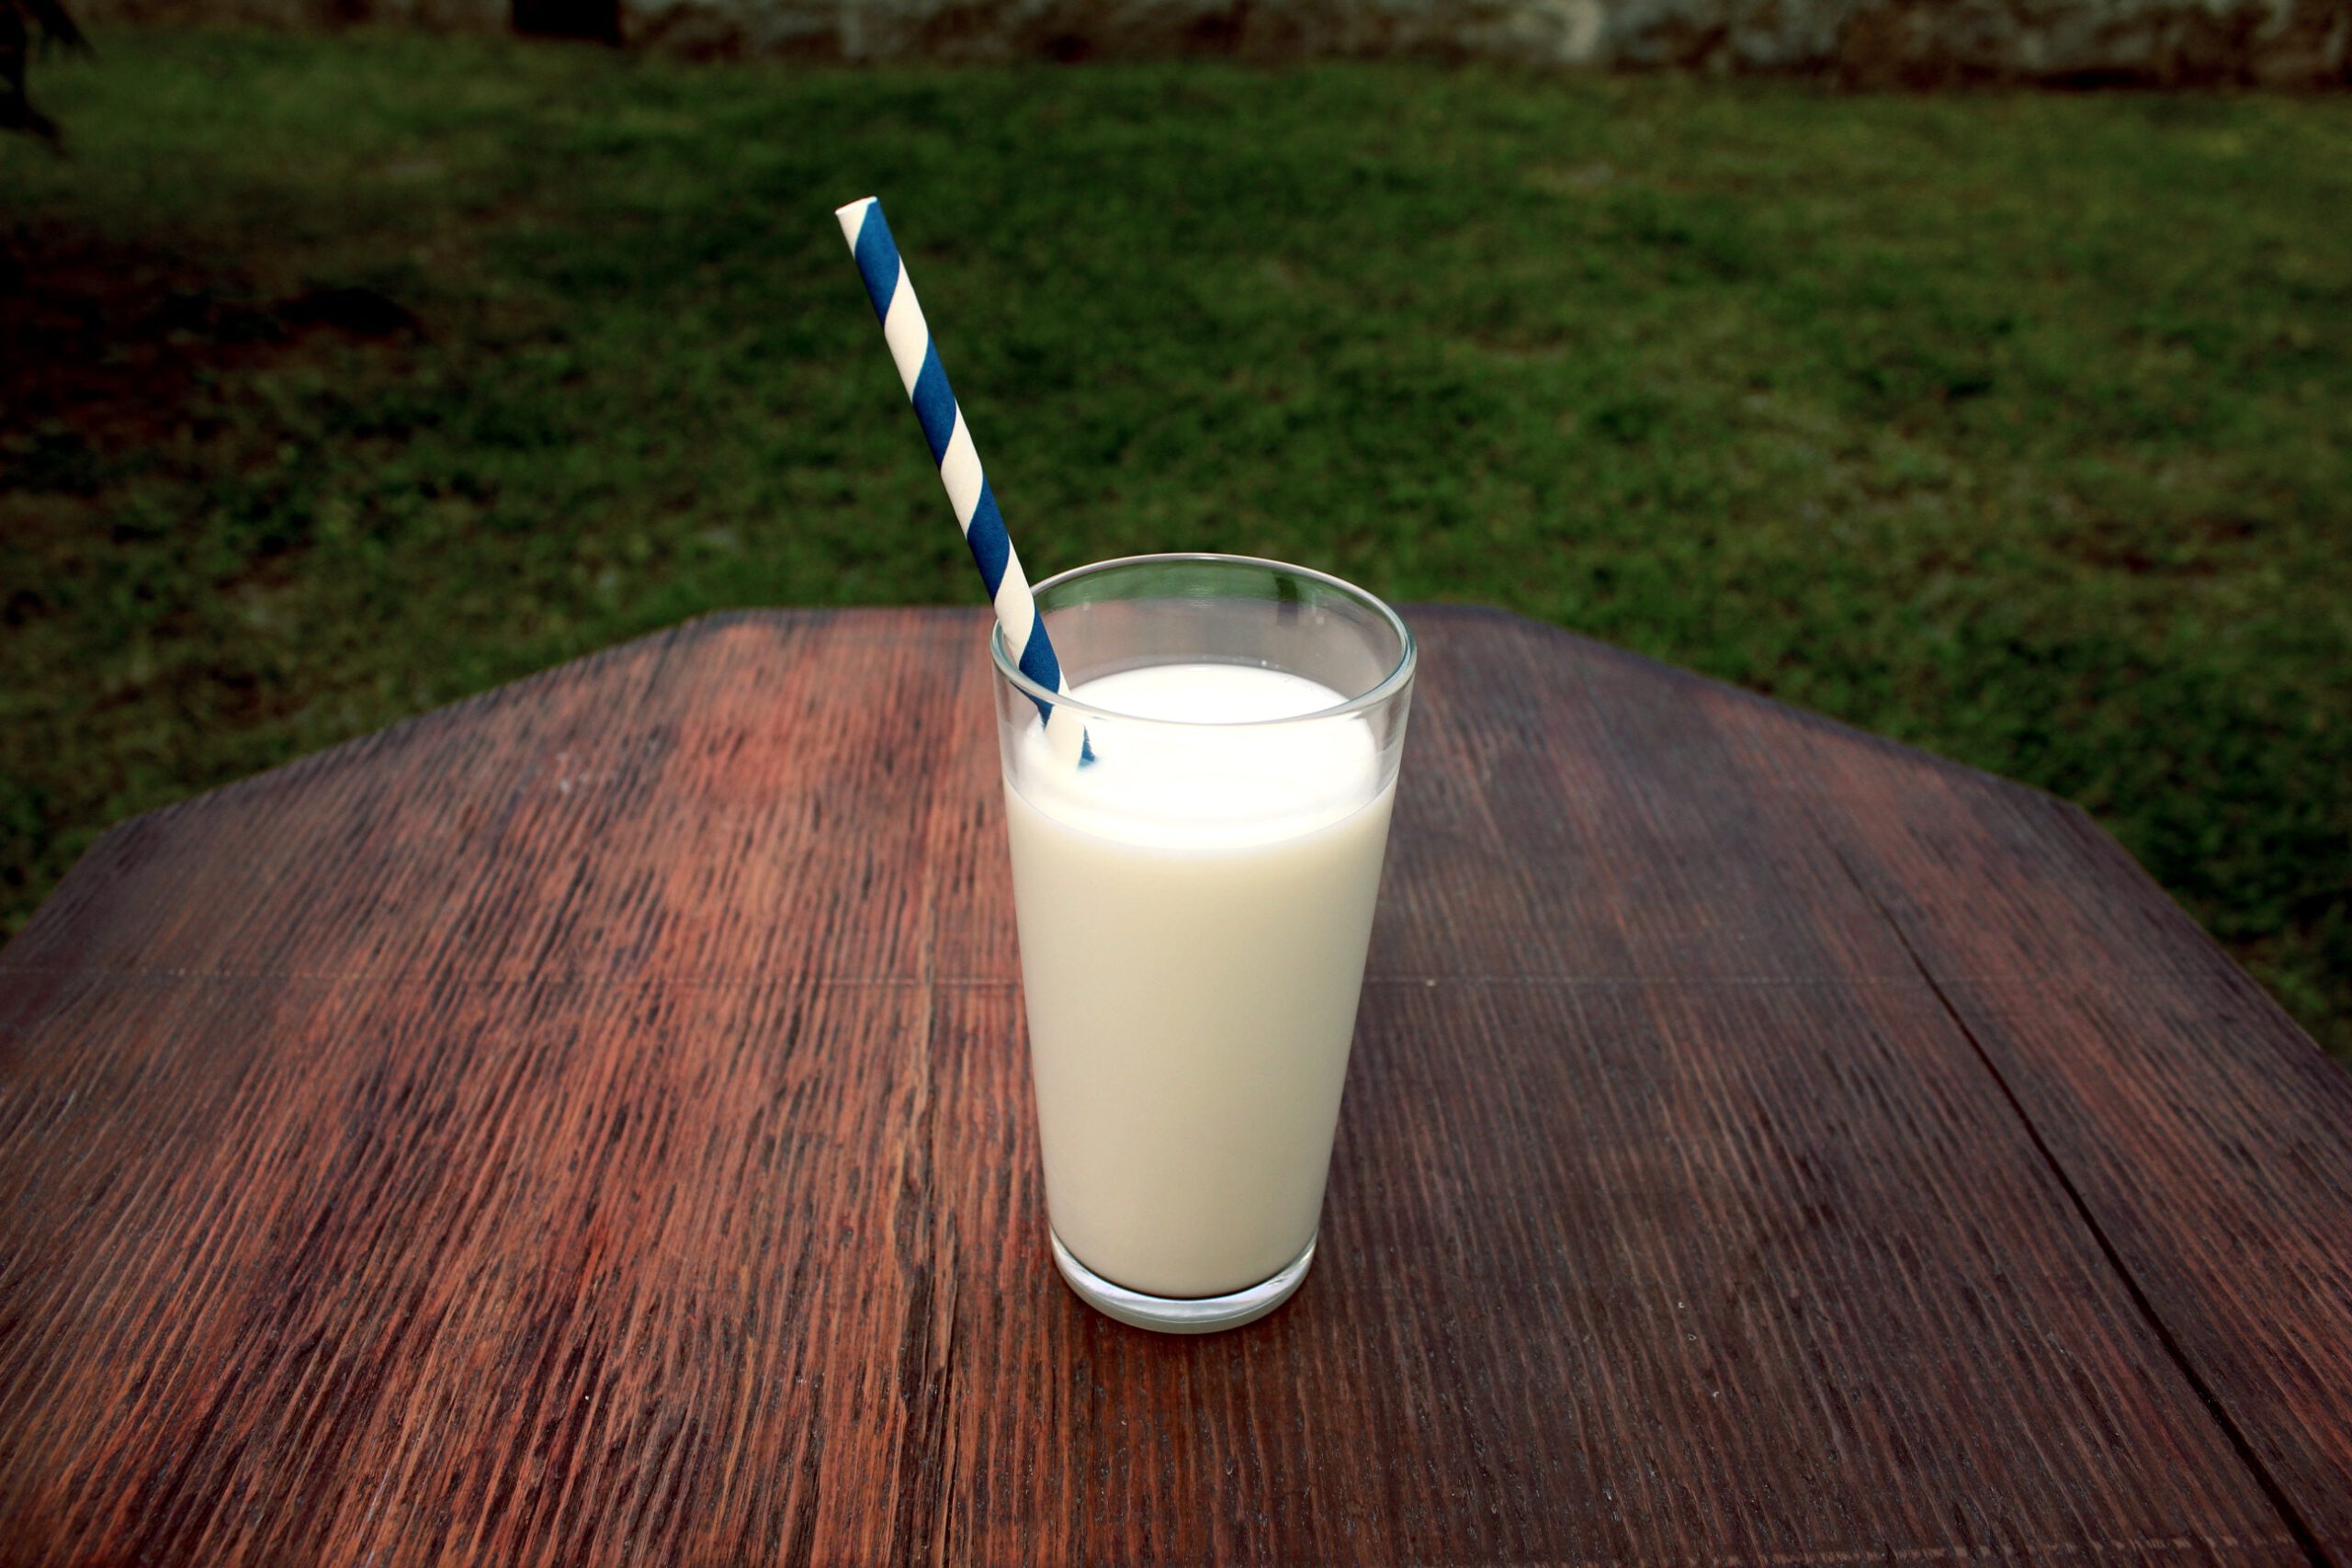 Szklanka mleka z papierową rurką do picia, stojąca na drewnianym stoliku na trawie w ogrodzie